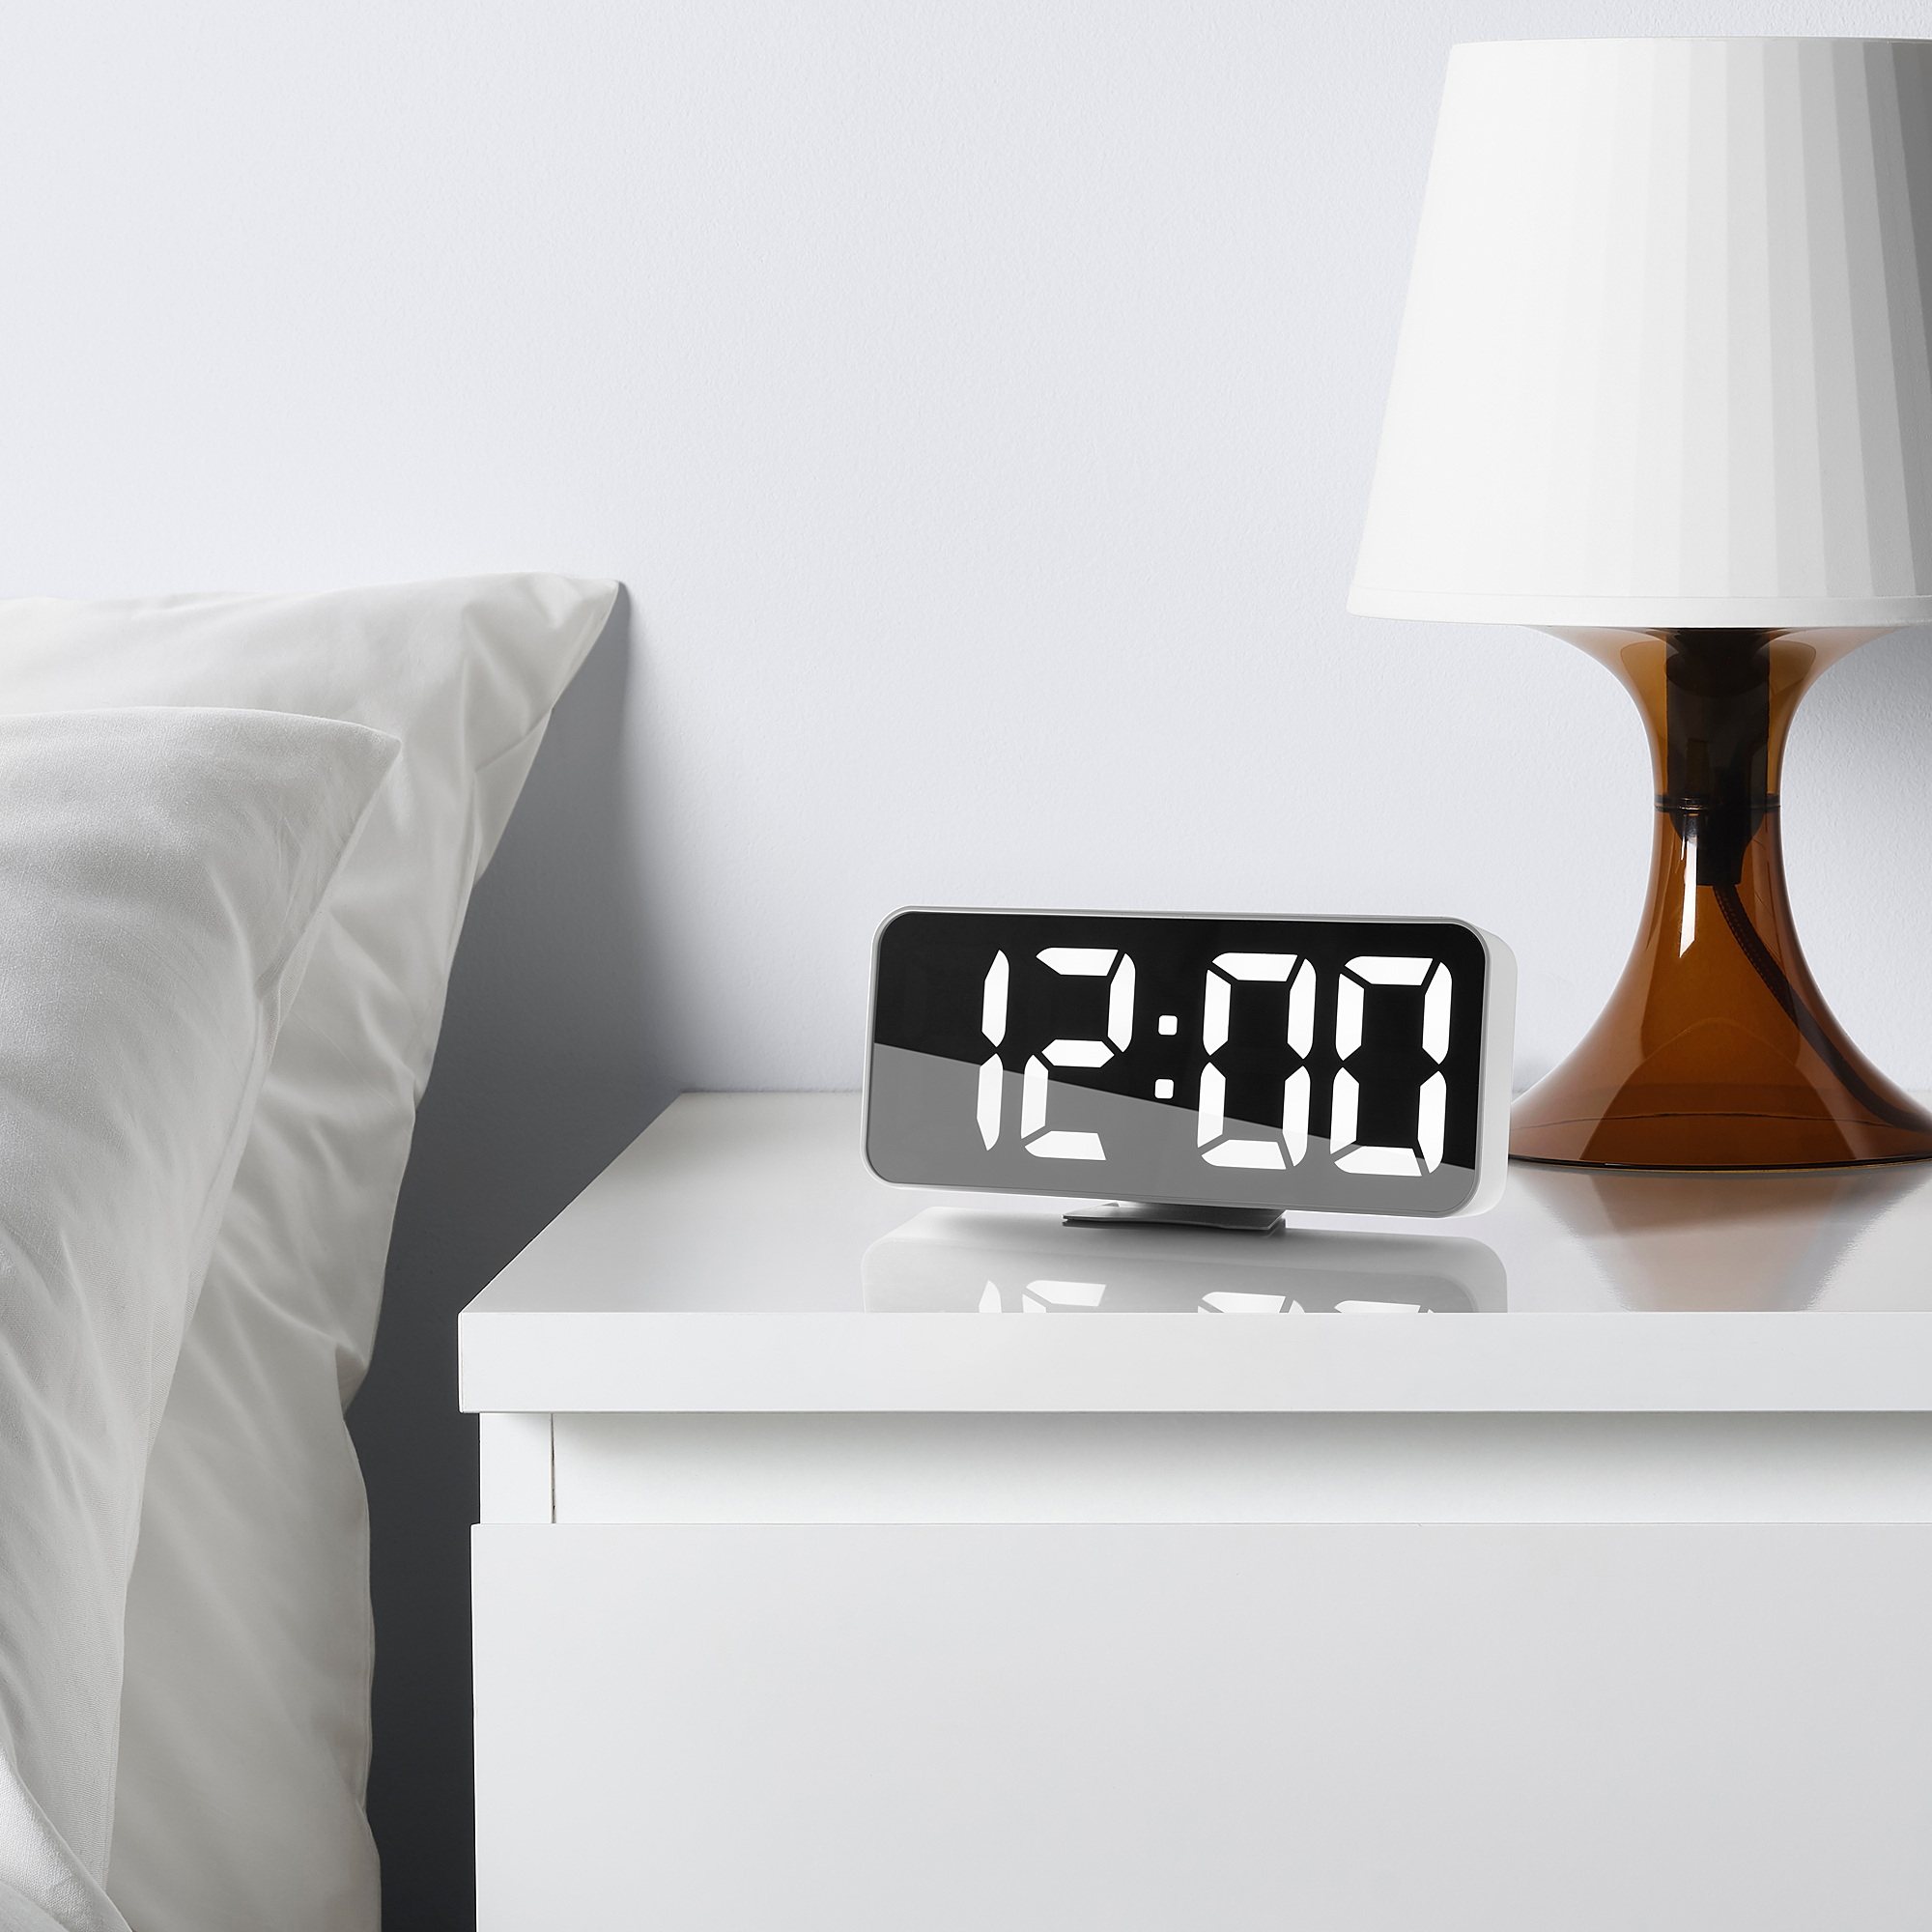 NOLLNING clock/thermometer/alarm